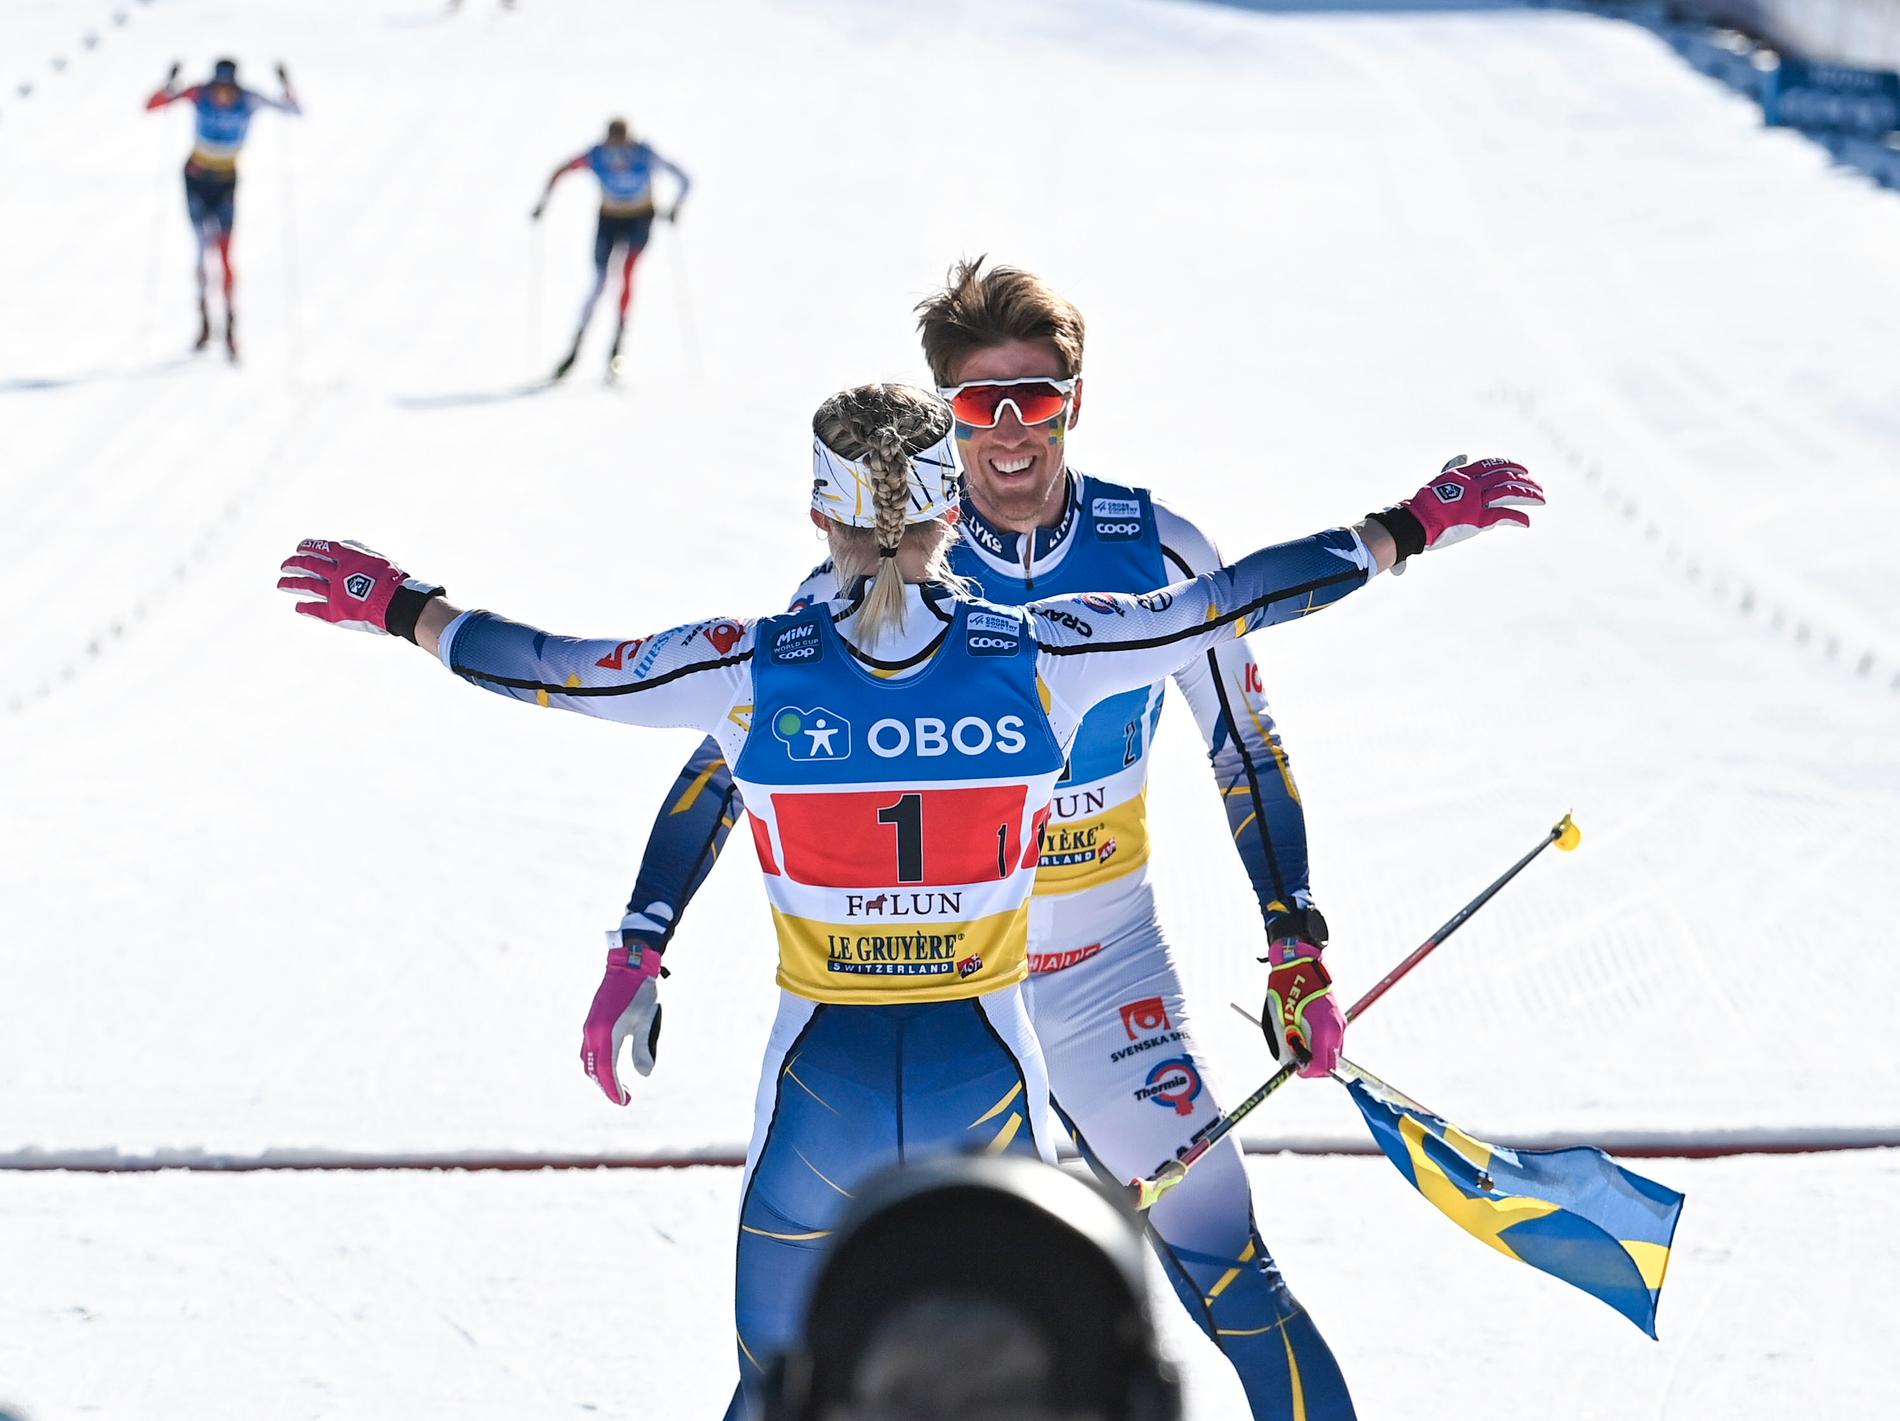 Calle Halfvarsson och Jonna Sundling jublar över segern i mixedstafetten i världscupen i Falun i vintras. Arkivbild.